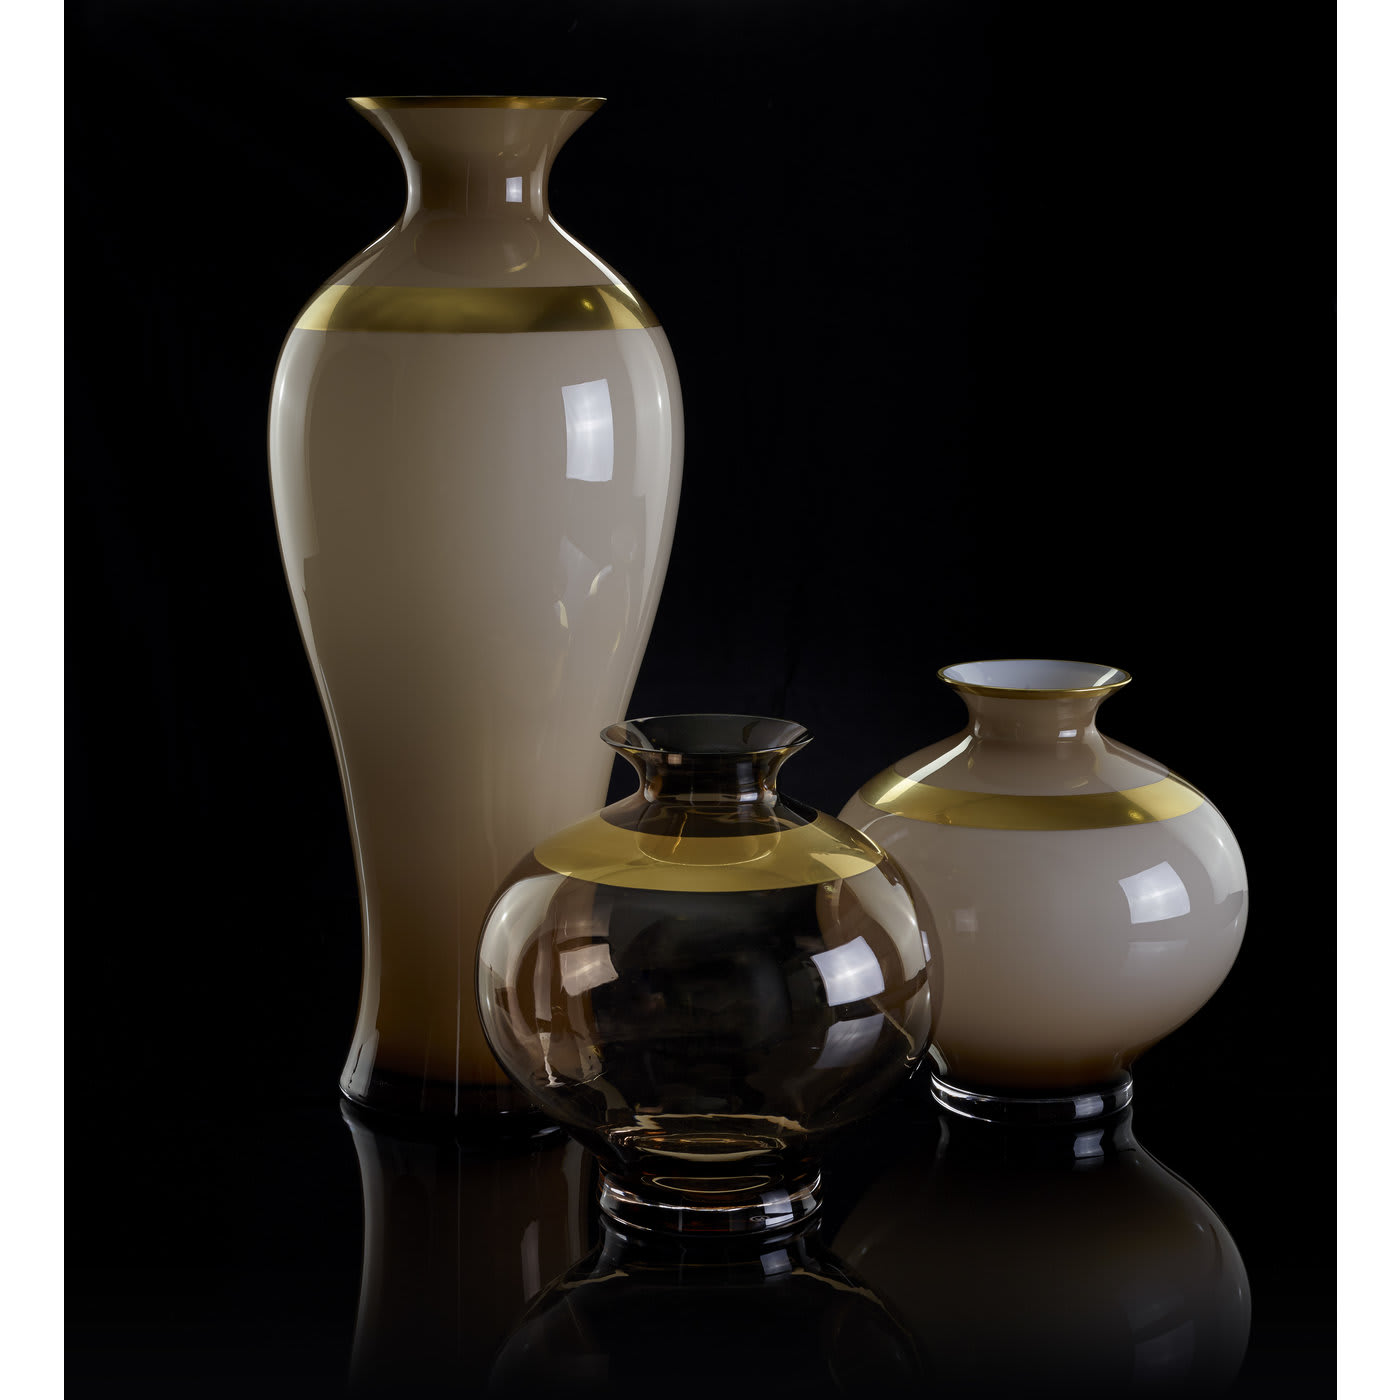 Saffo Small Transparent Amphora - Pure 24k Gold - Mara Dal Cin for DFN